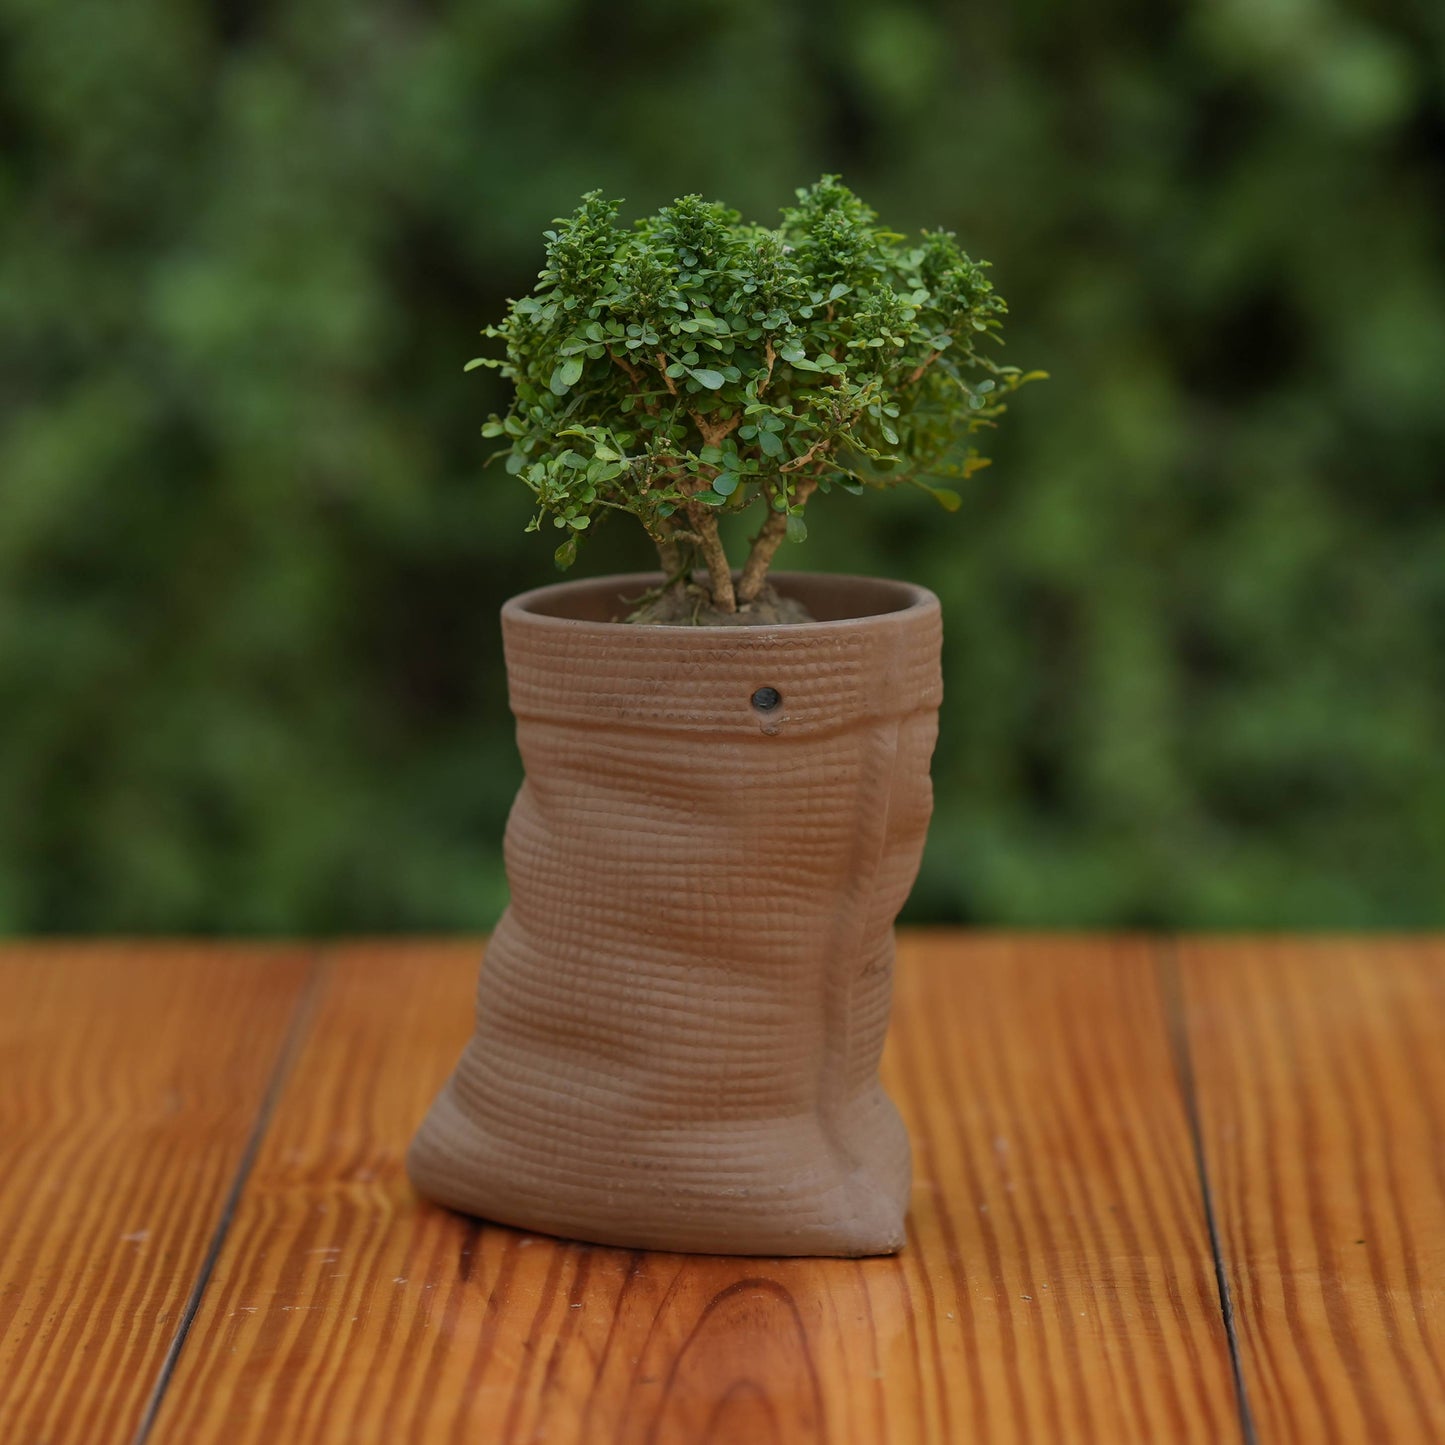 Ceramic Artisanal Grooved Tapered Pot/ Planter For Plants